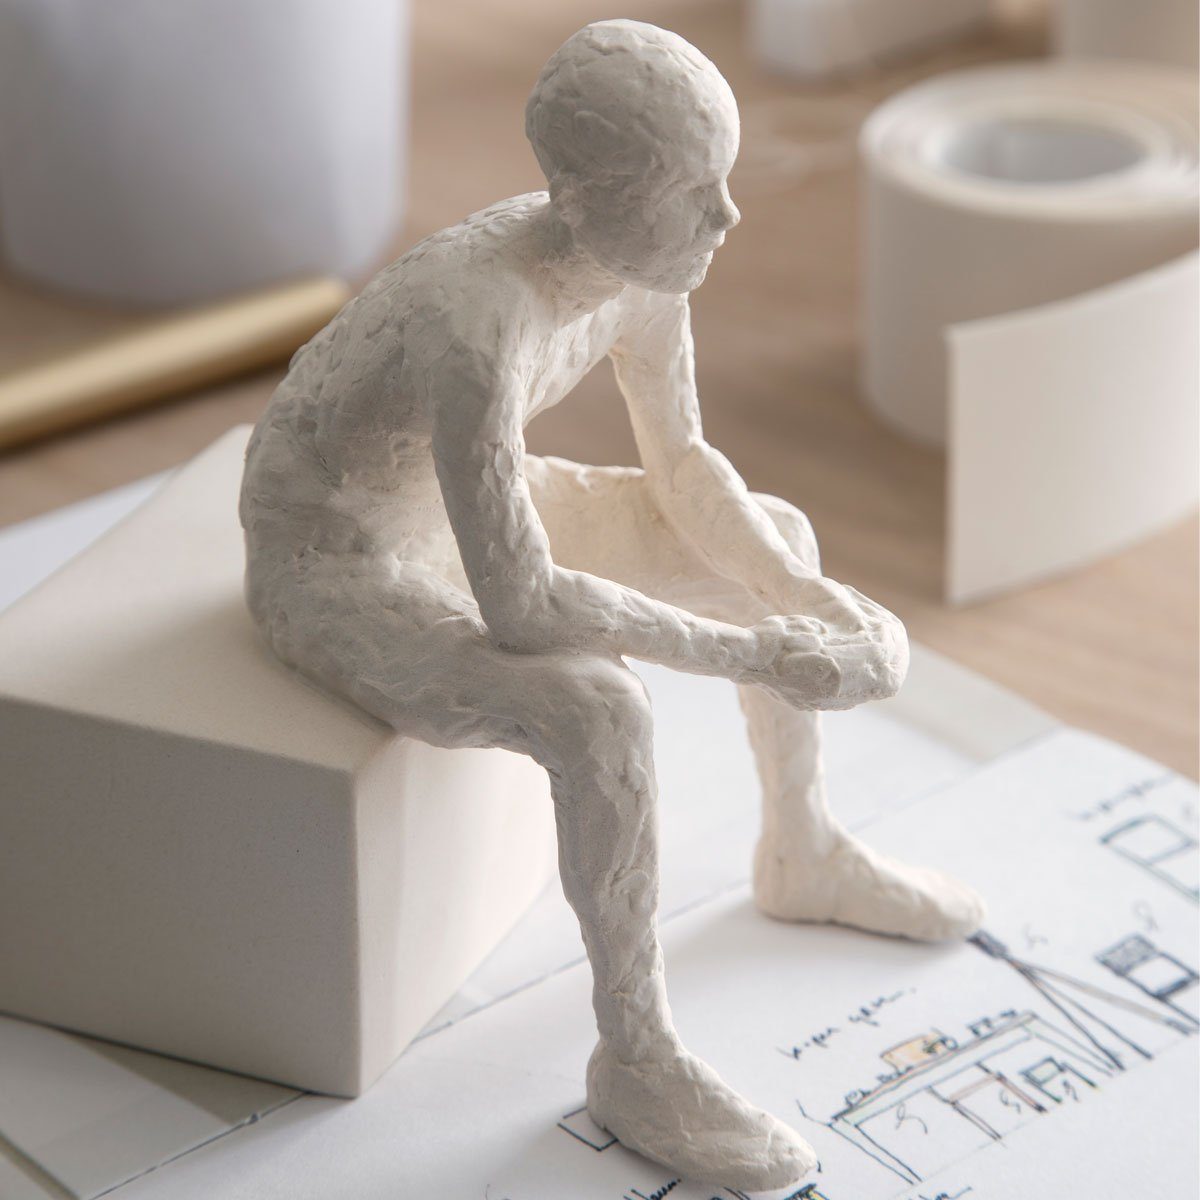 Kähler Dekofigur The Reflective (Der Nachdenkliche); One aus Serie der Bjelke 'Character' Bildhauerin Malene Keramik Skulptur von